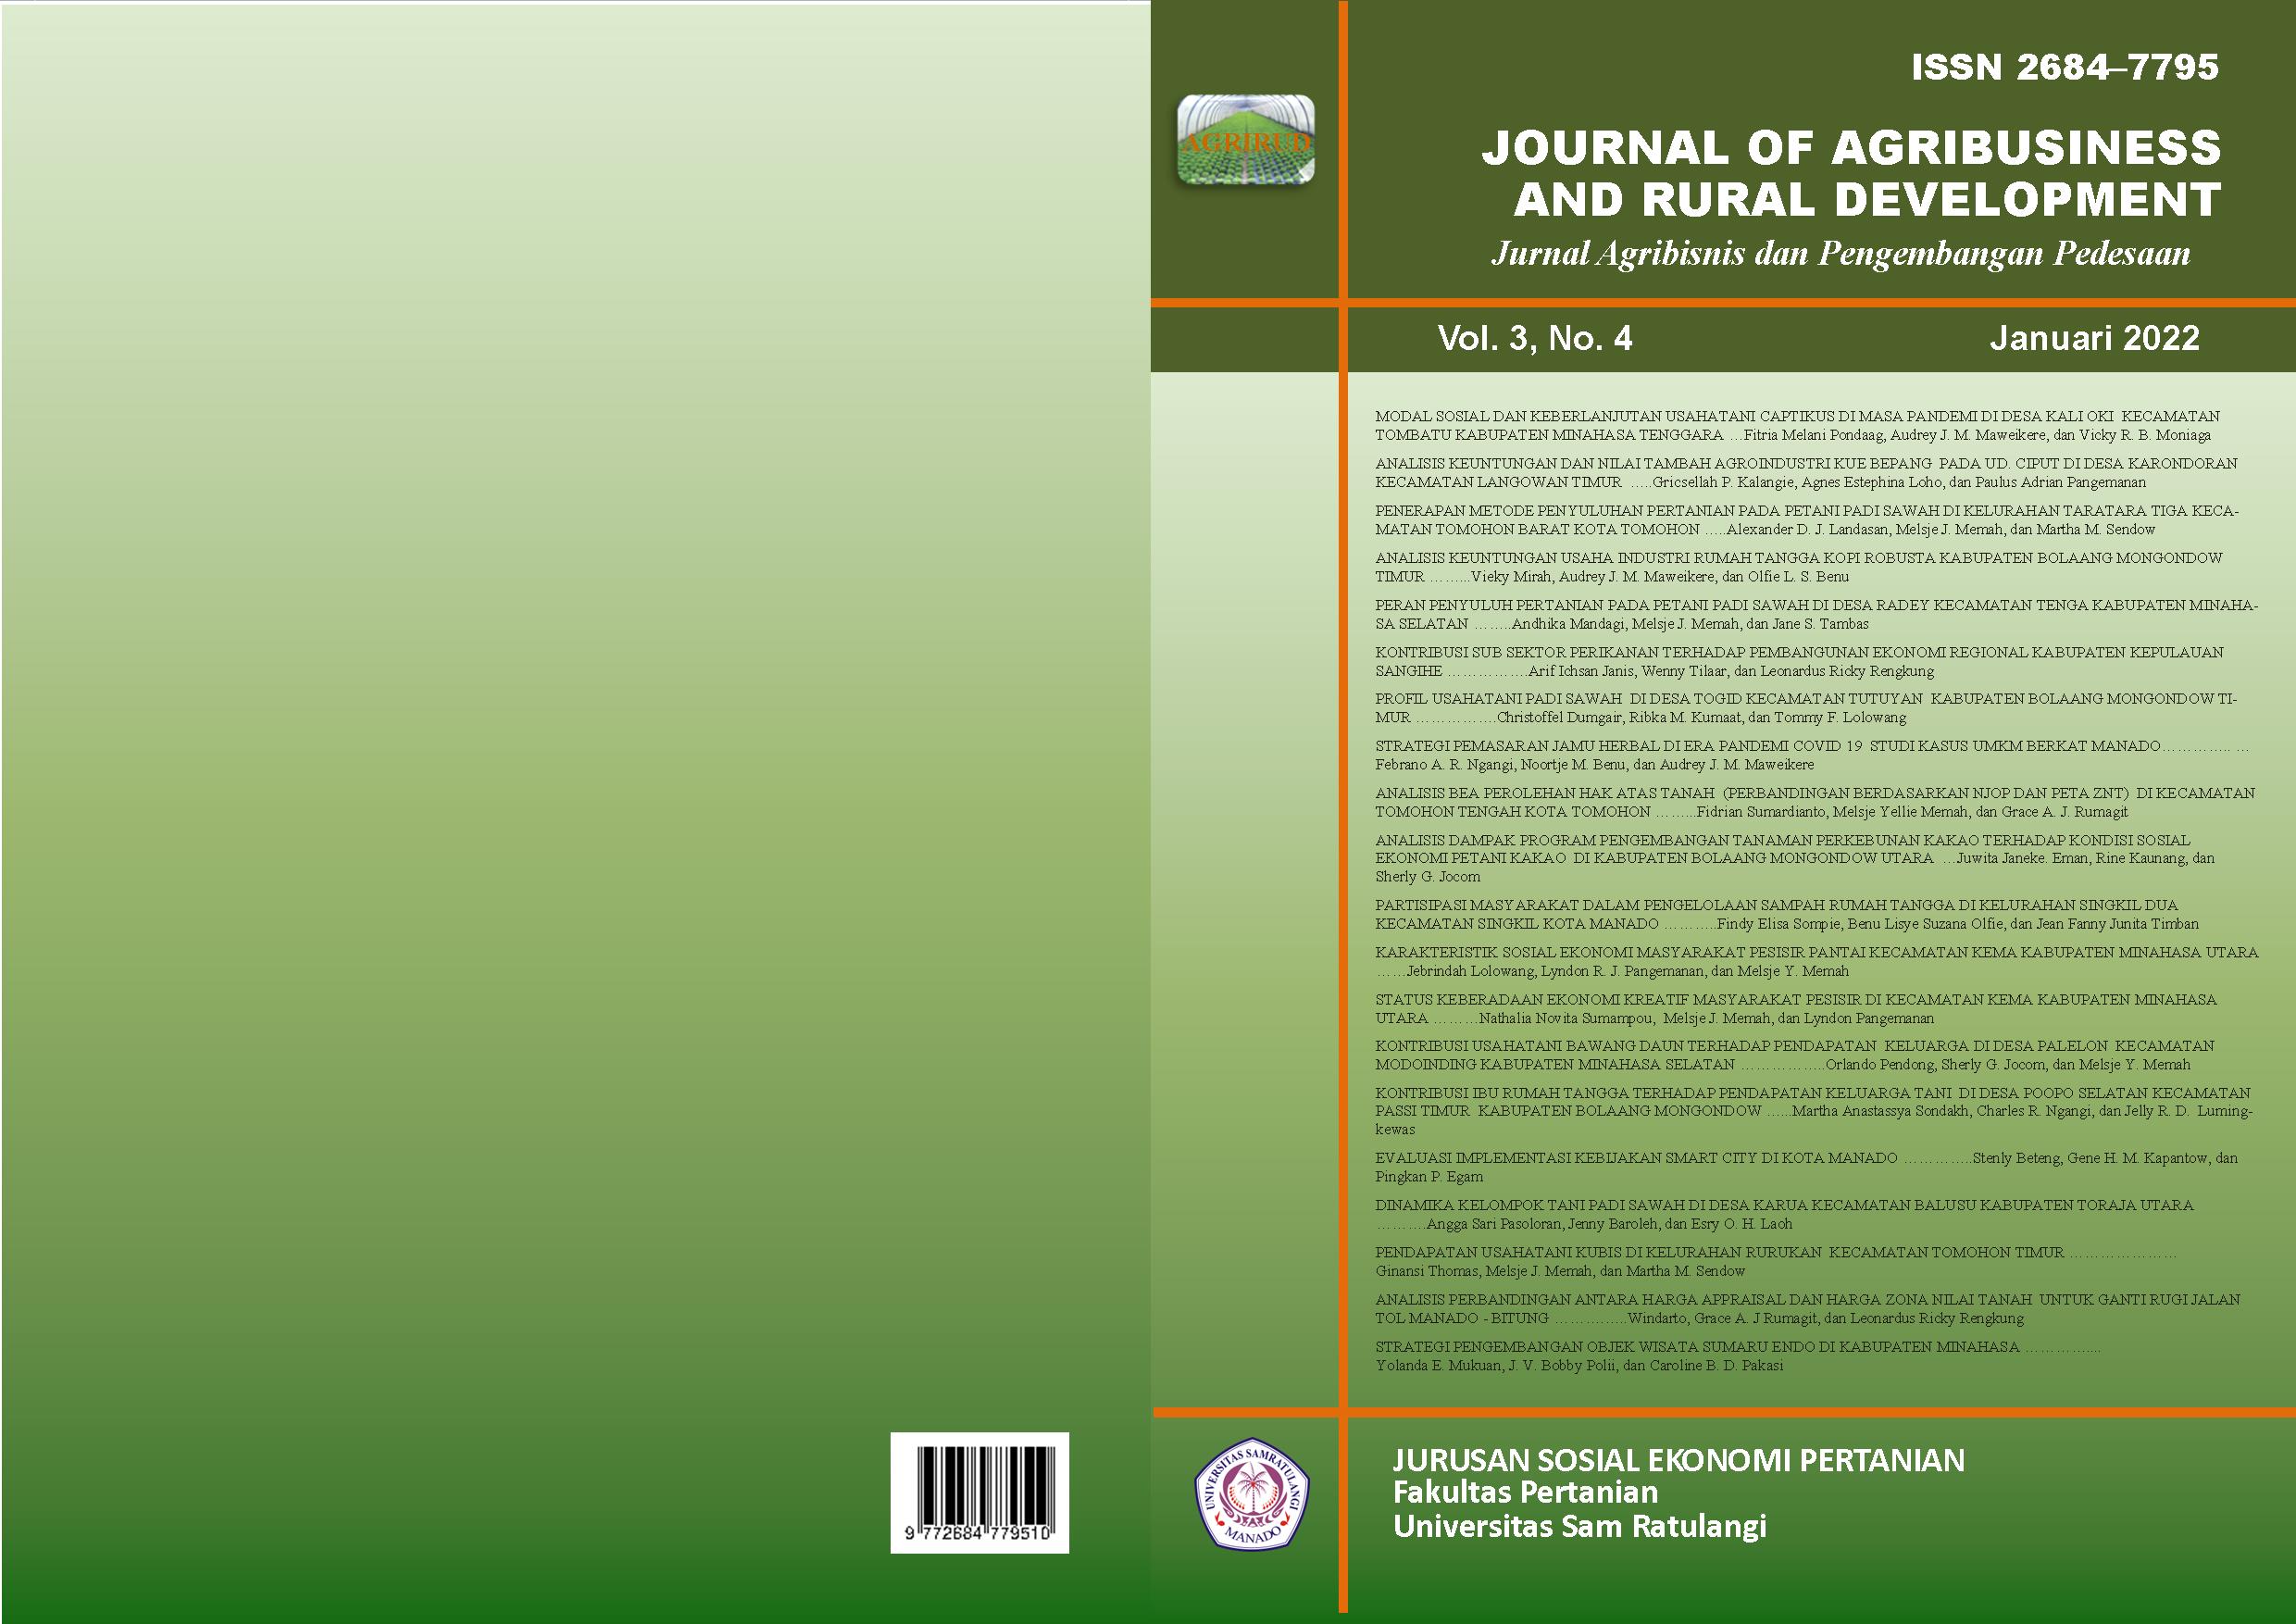 					View Vol. 3 No. 4 (2022): Journal of Agribusiness and Rural Development (Jurnal Agribisnis dan Pengembangan Pedesaan) - Januari 2022
				